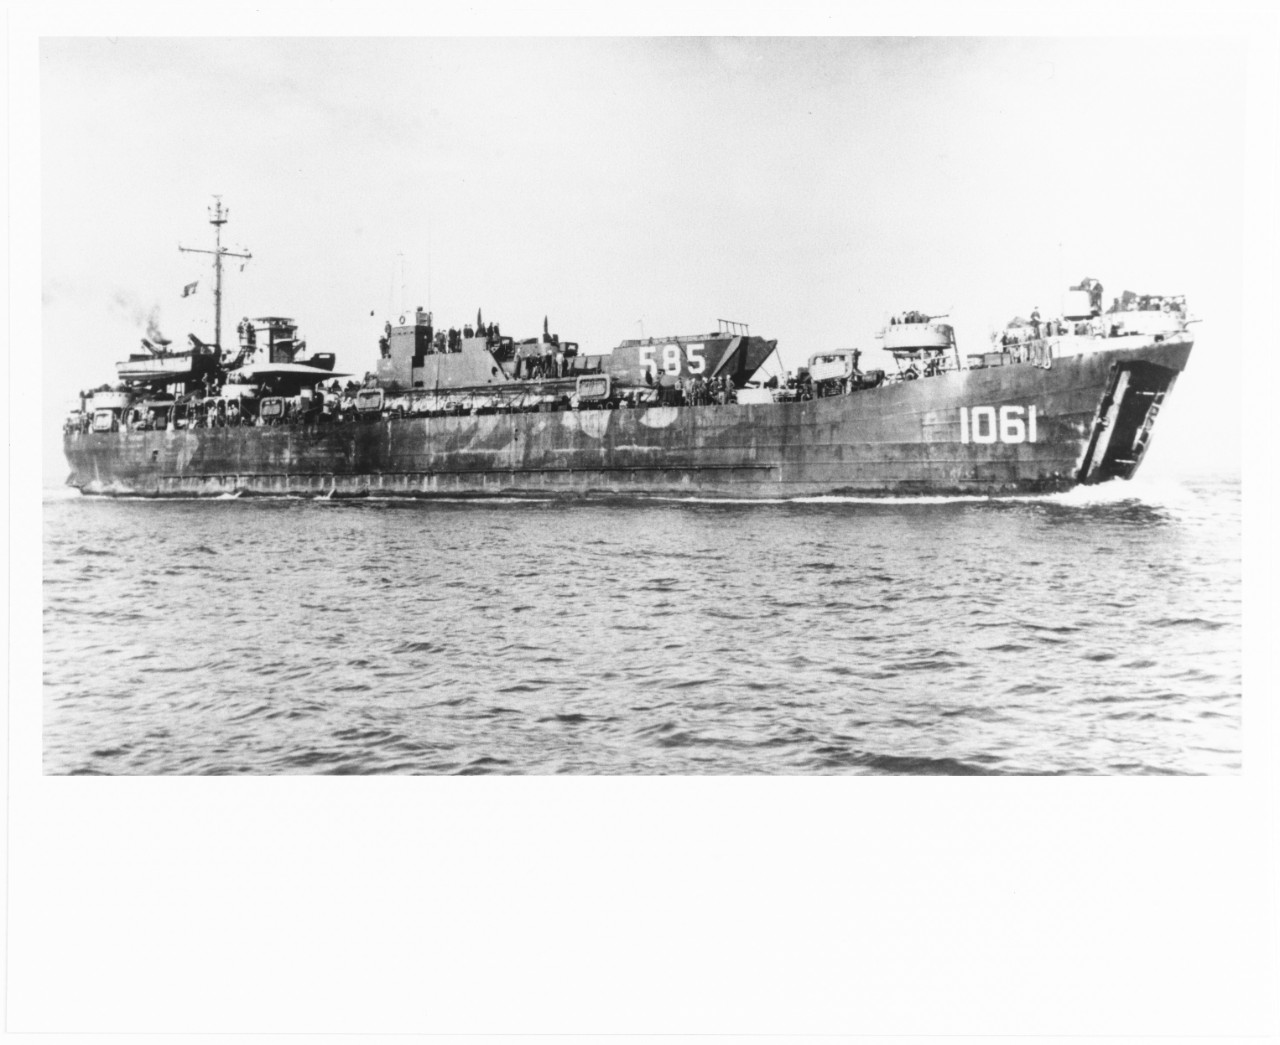 USS LST-1061